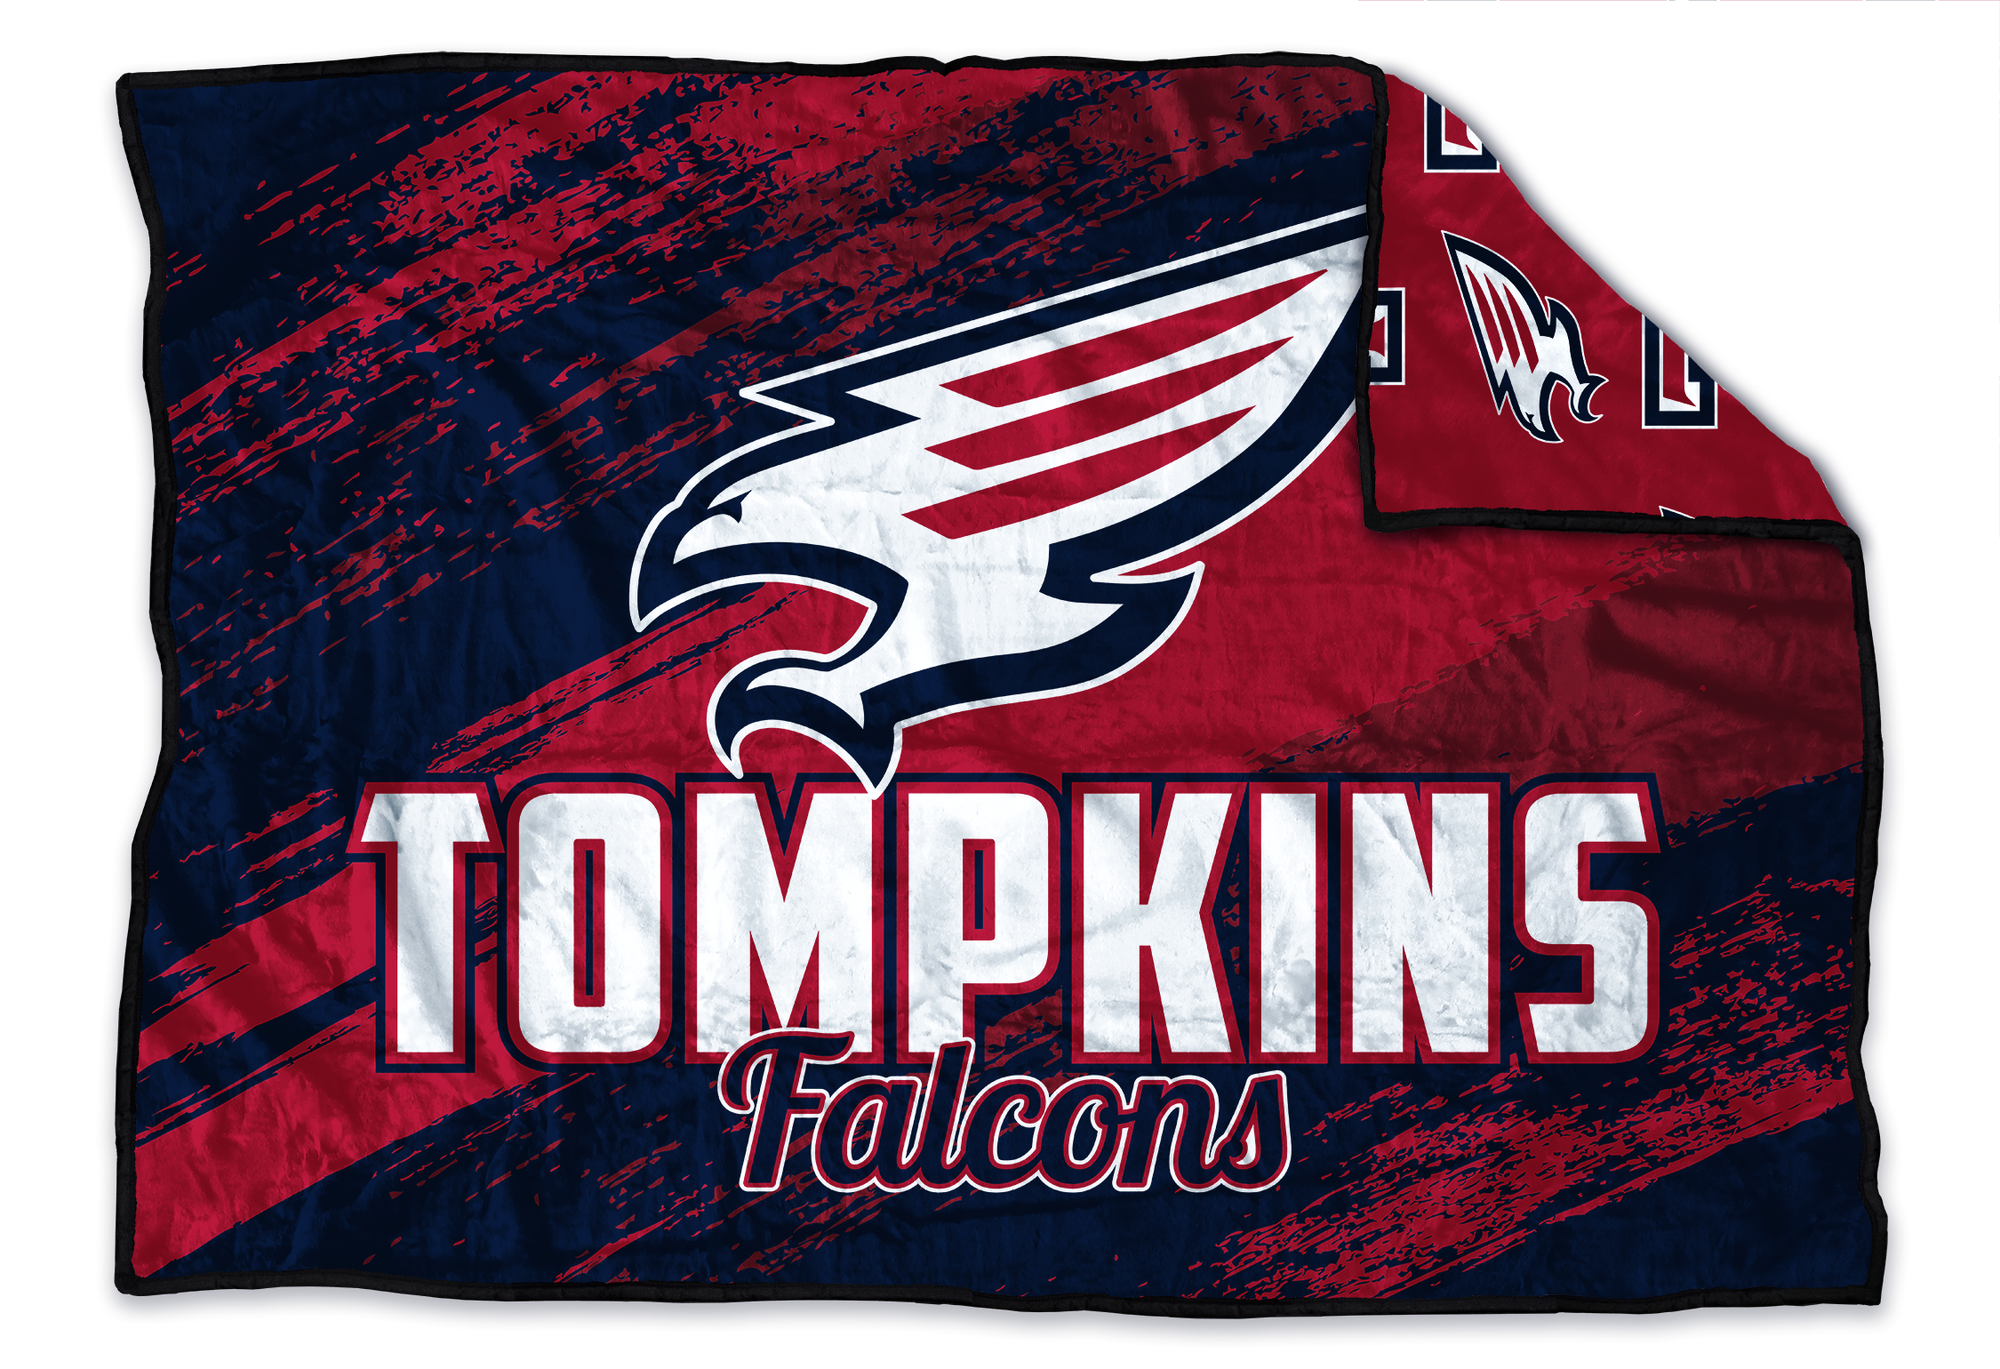 Tompkins Falcons